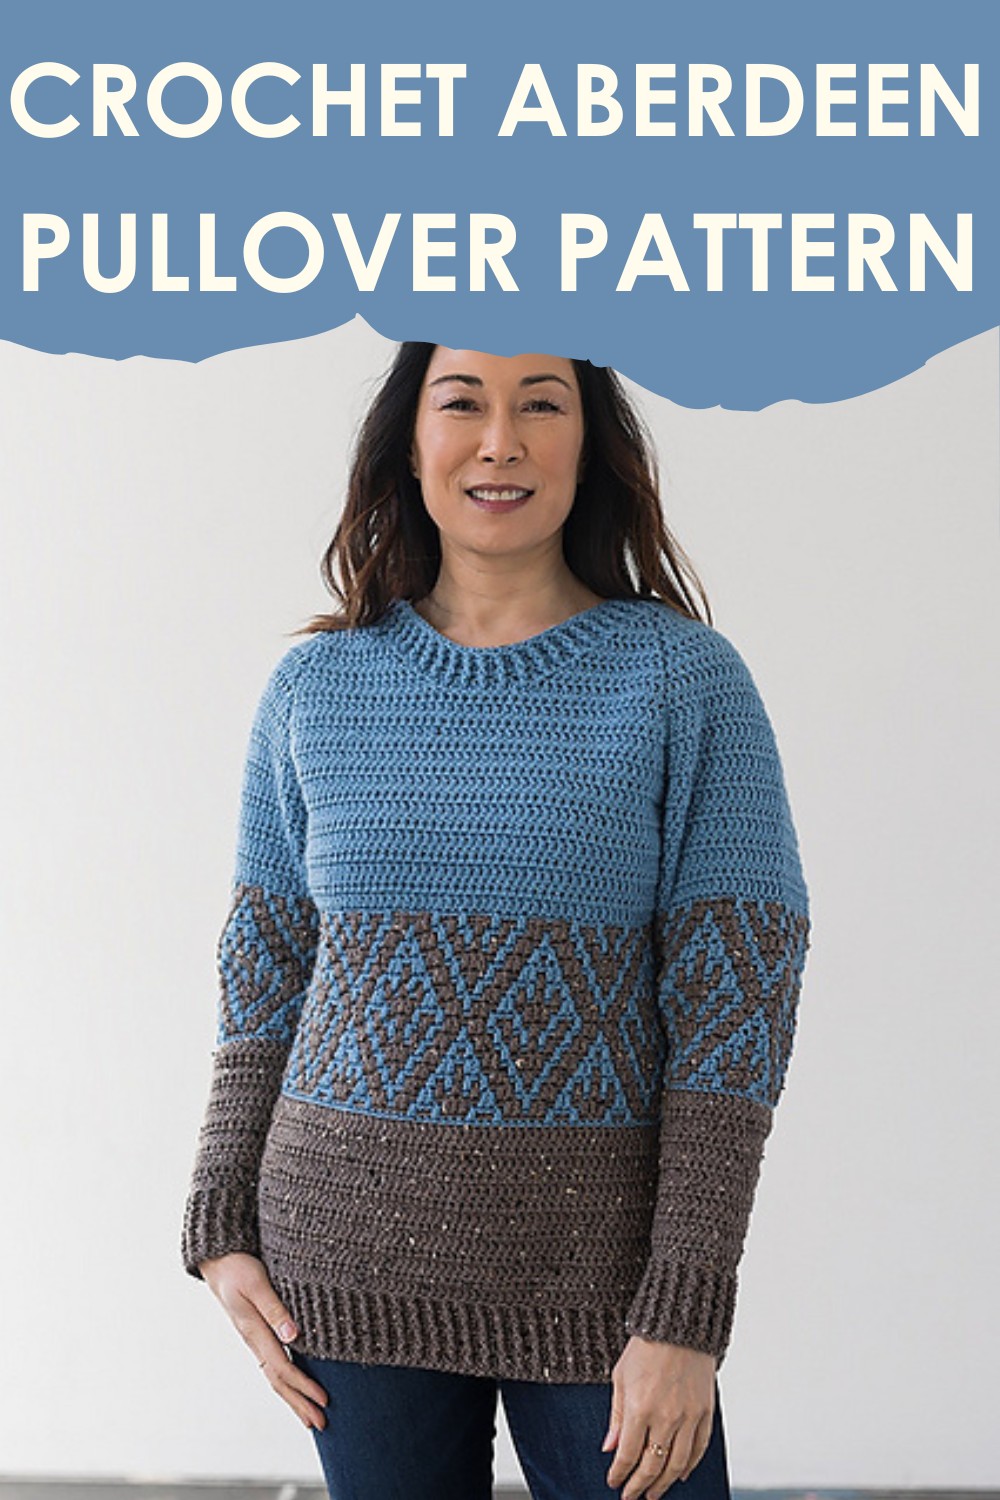 Crochet Aberdeen Pullover Pattern